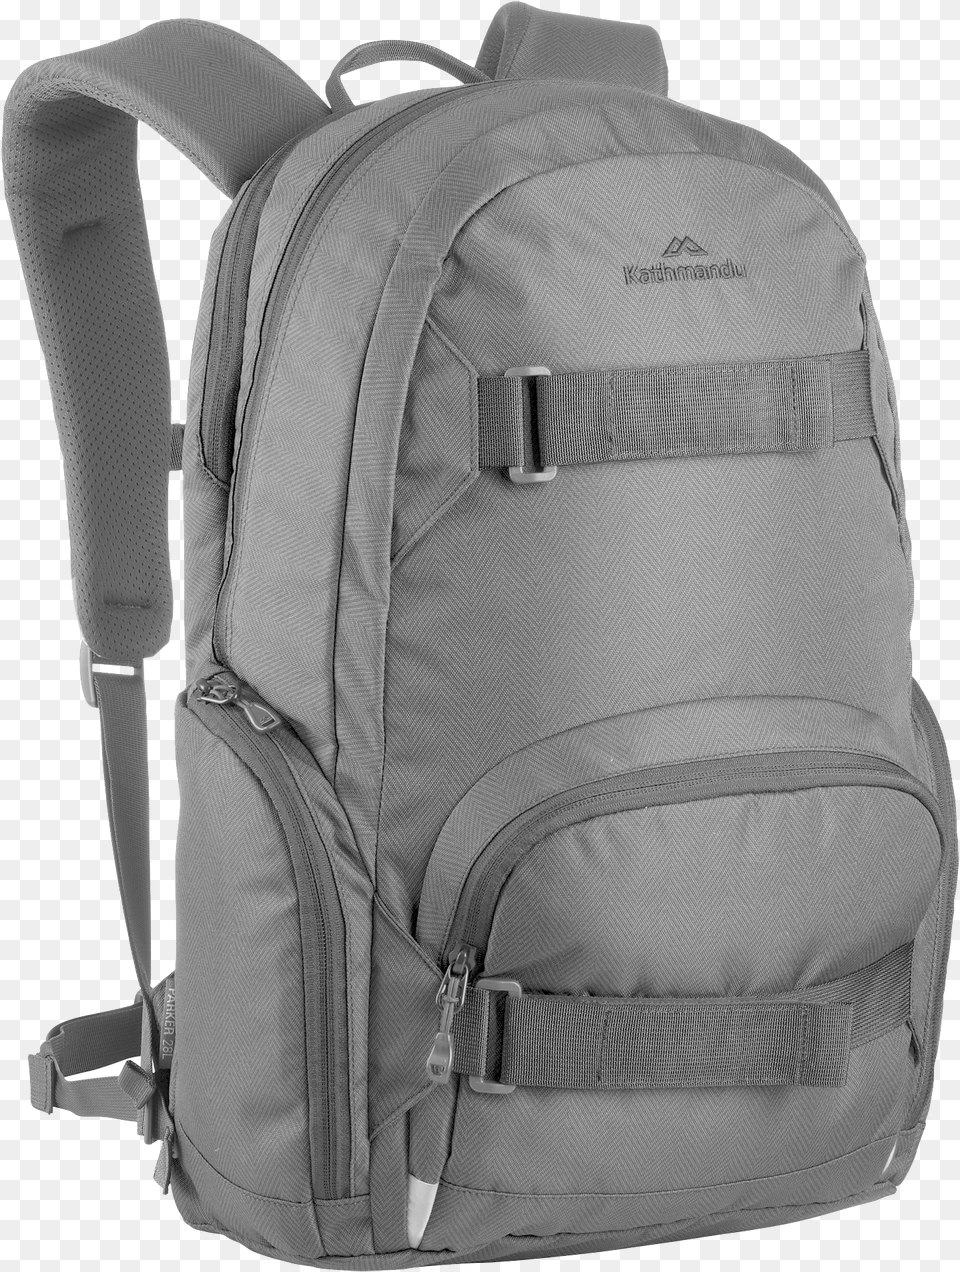 Backpack Backpack Transparent Background, Bag, Clothing, Vest, Backpacking Png Image